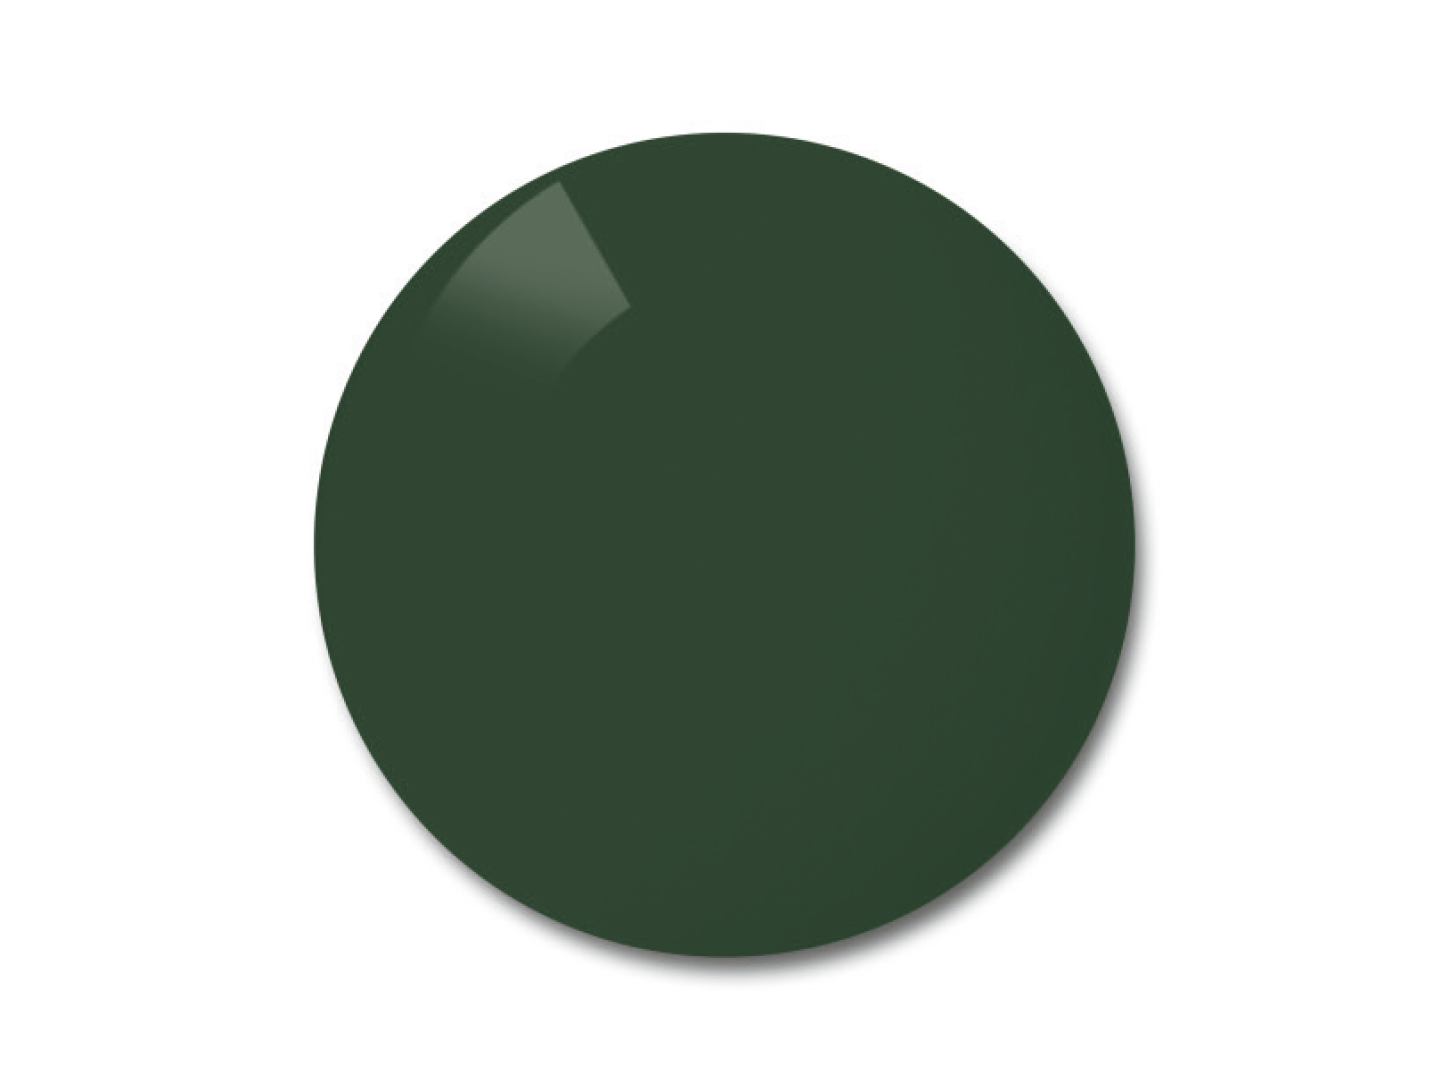 Пример цвета серо-зеленых (pioneer) поляризованных линз.